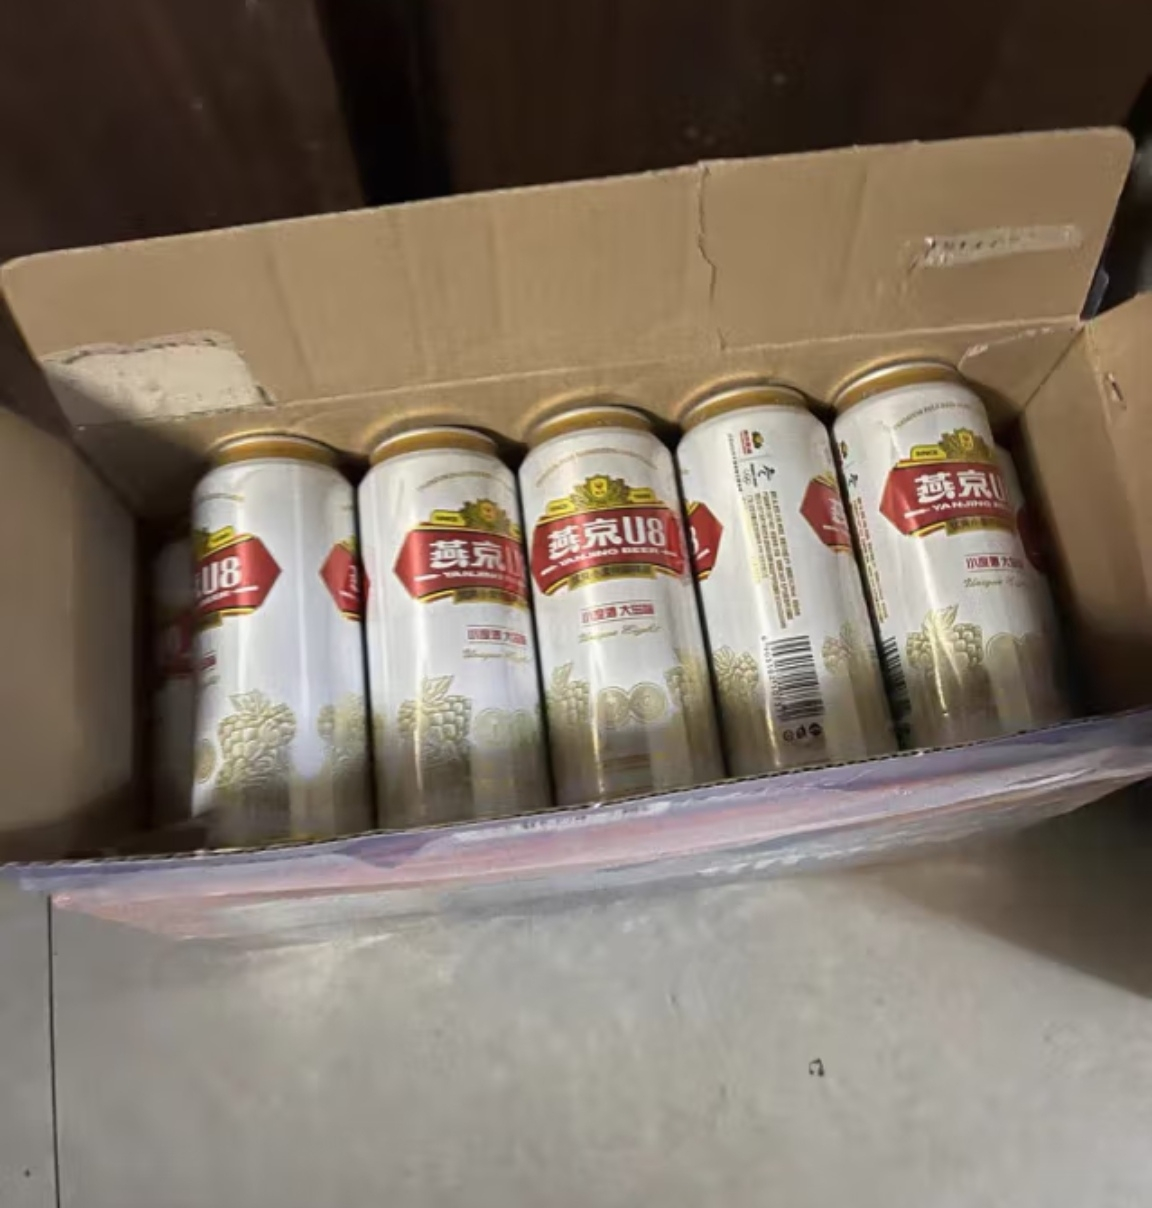 燕京啤酒U8啤酒经典罐装小度数500ml*12罐整箱燕京u8晒单图